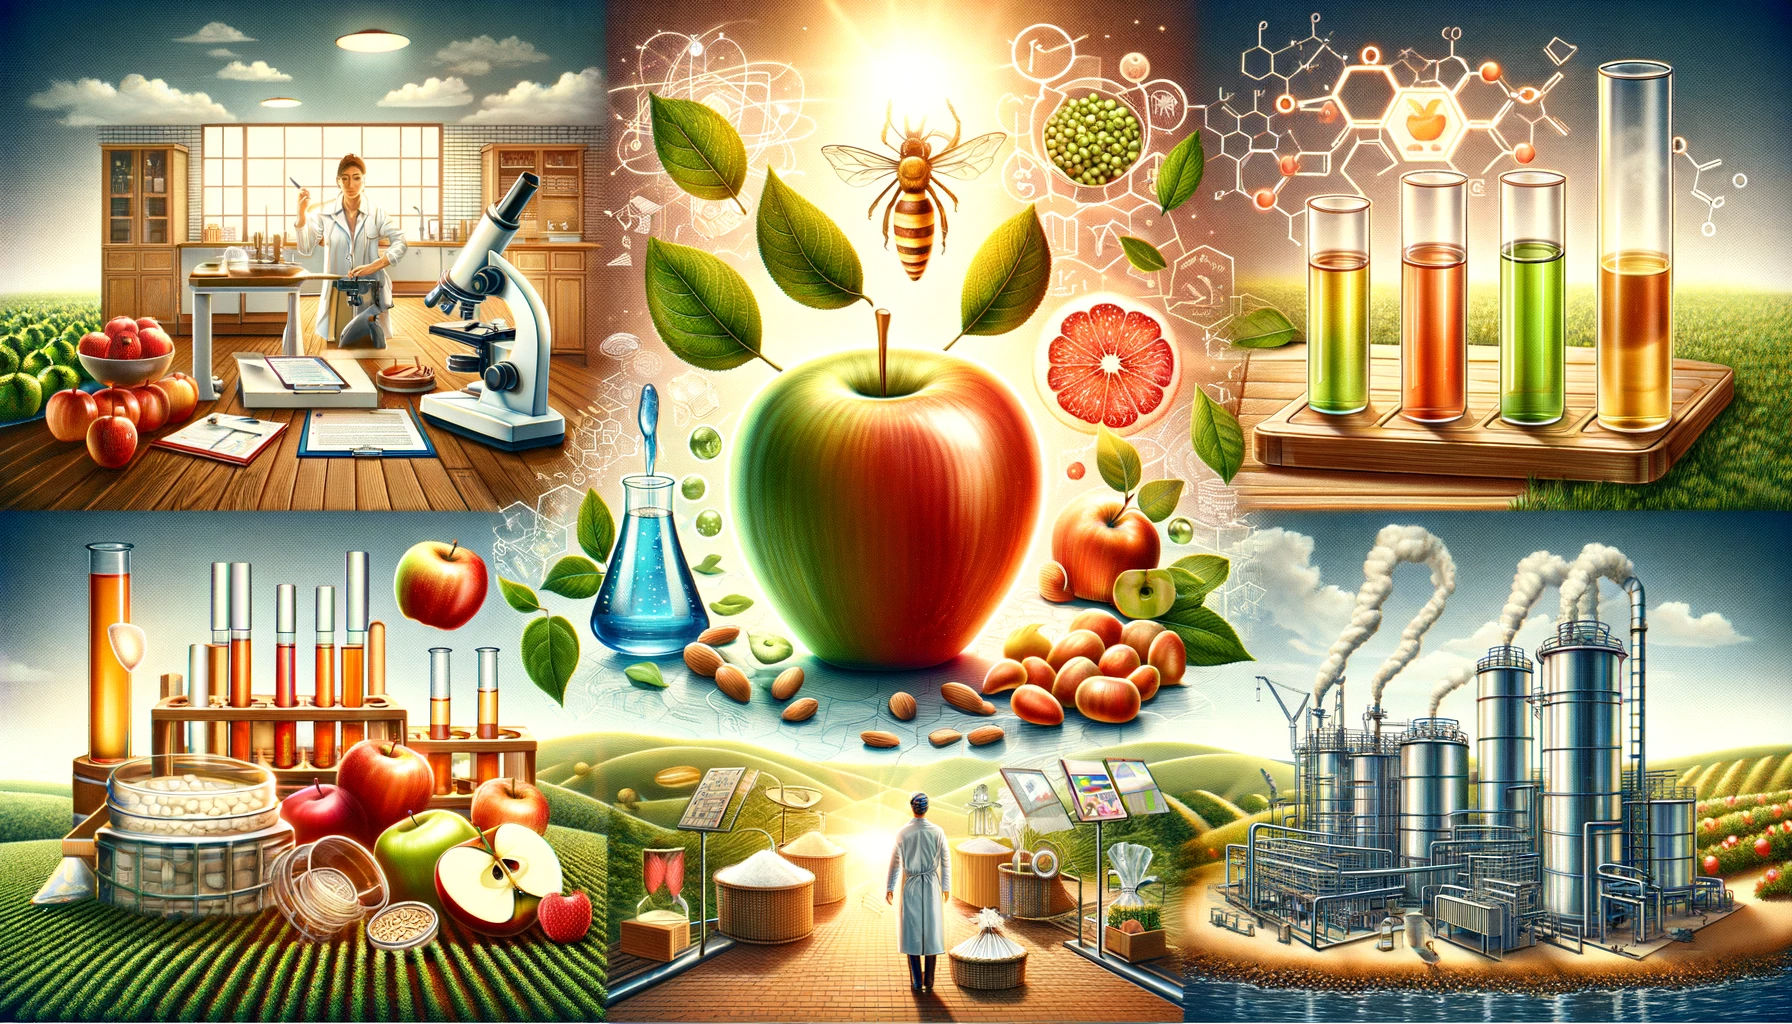 Kwas jabłkowy: od kuchni do laboratorium – wszechstronne zastosowanie